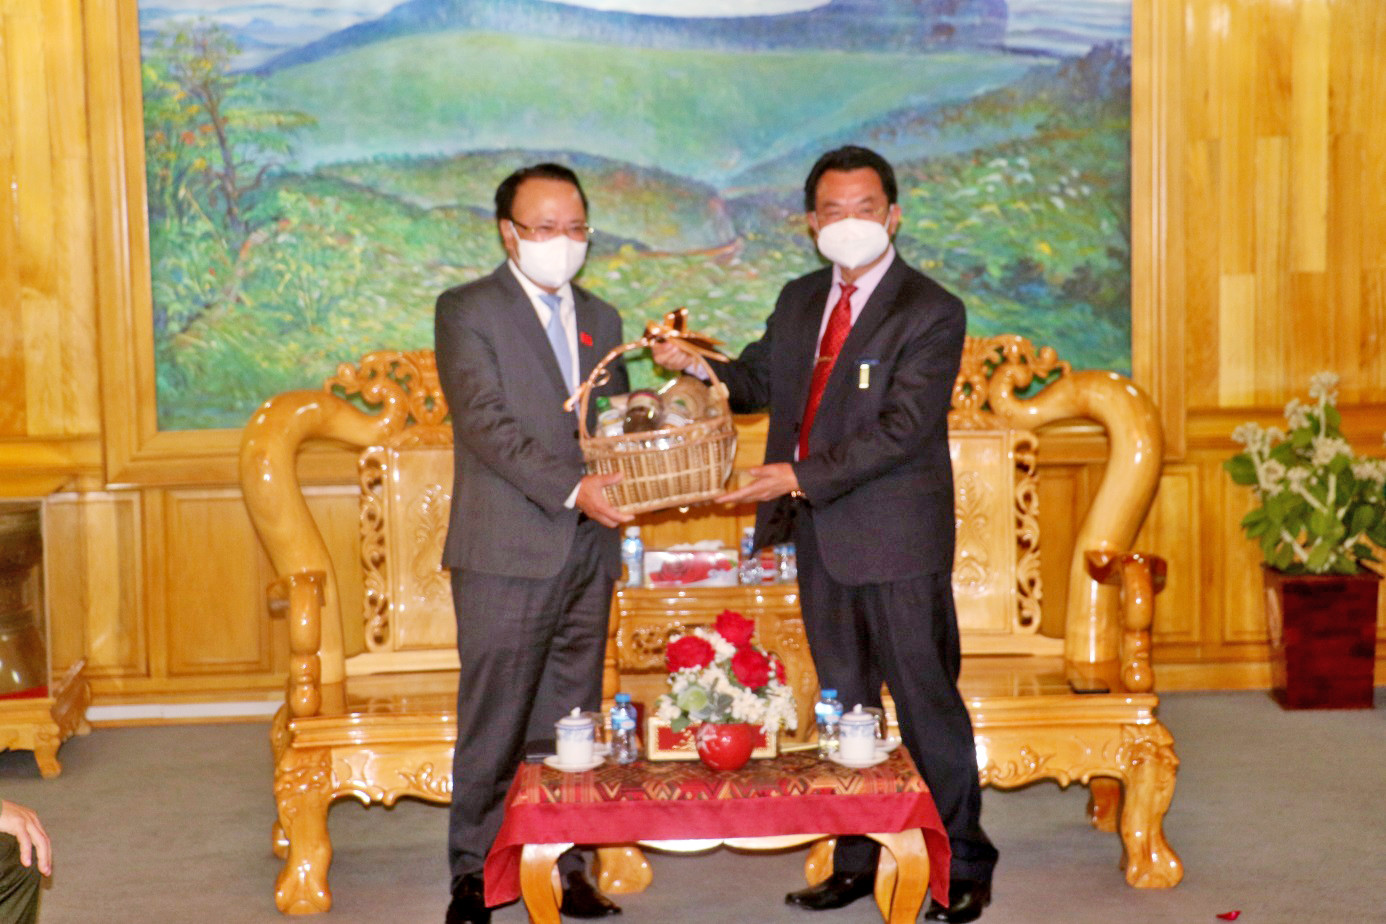 Bí thư, tỉnh trưởng tỉnh Hủa Phăn tặng quà cảm ơn Đoàn công tác của tỉnh Nghệ An.